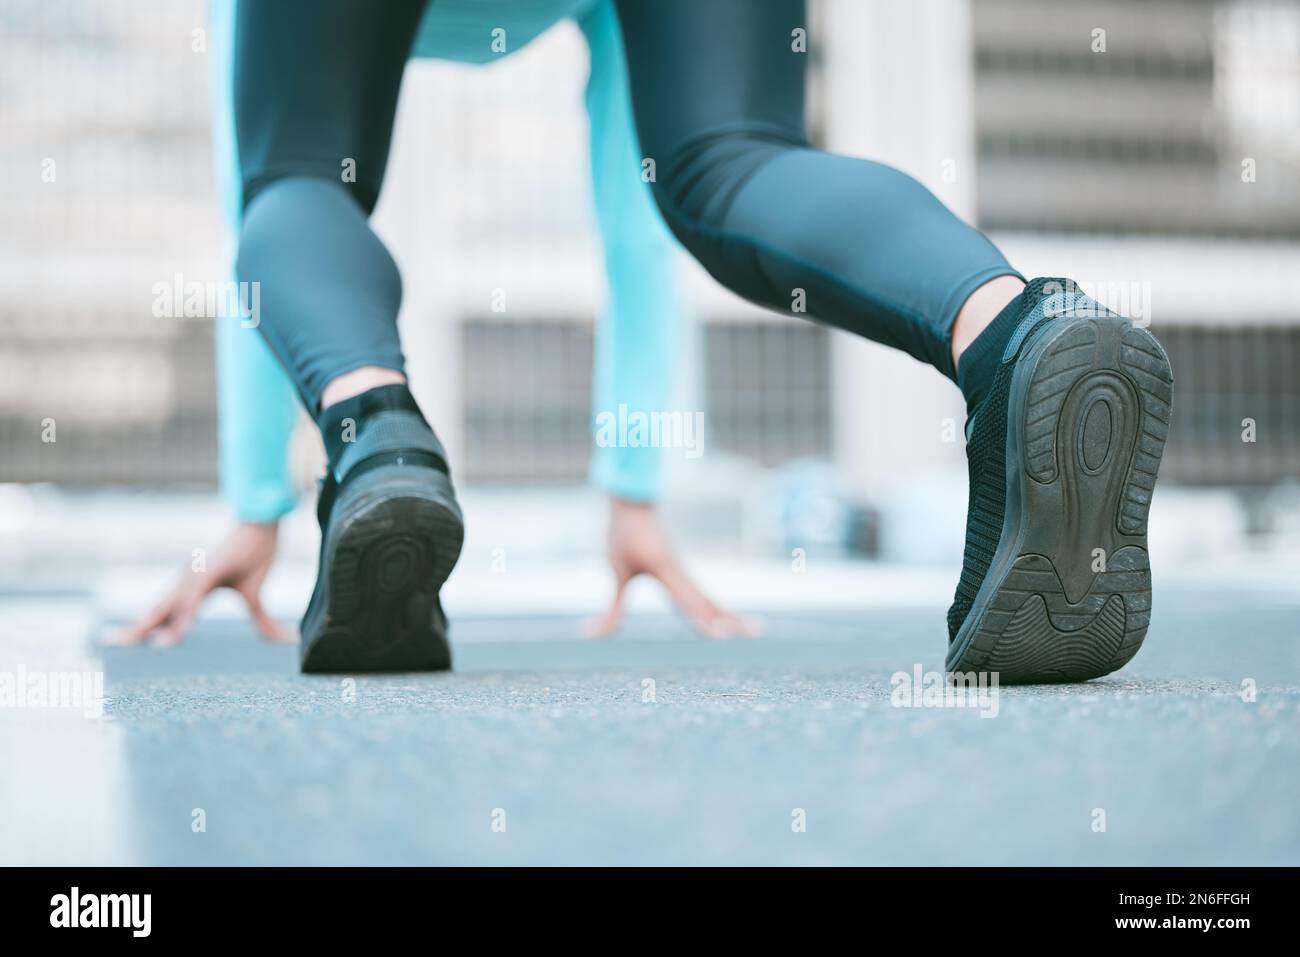 Gros plan de la semelle de chaussures d'une athlète féminine se préparant à courir en position de départ tout en s'exerçant à l'extérieur. Femme sportive portant des chaussures Banque D'Images